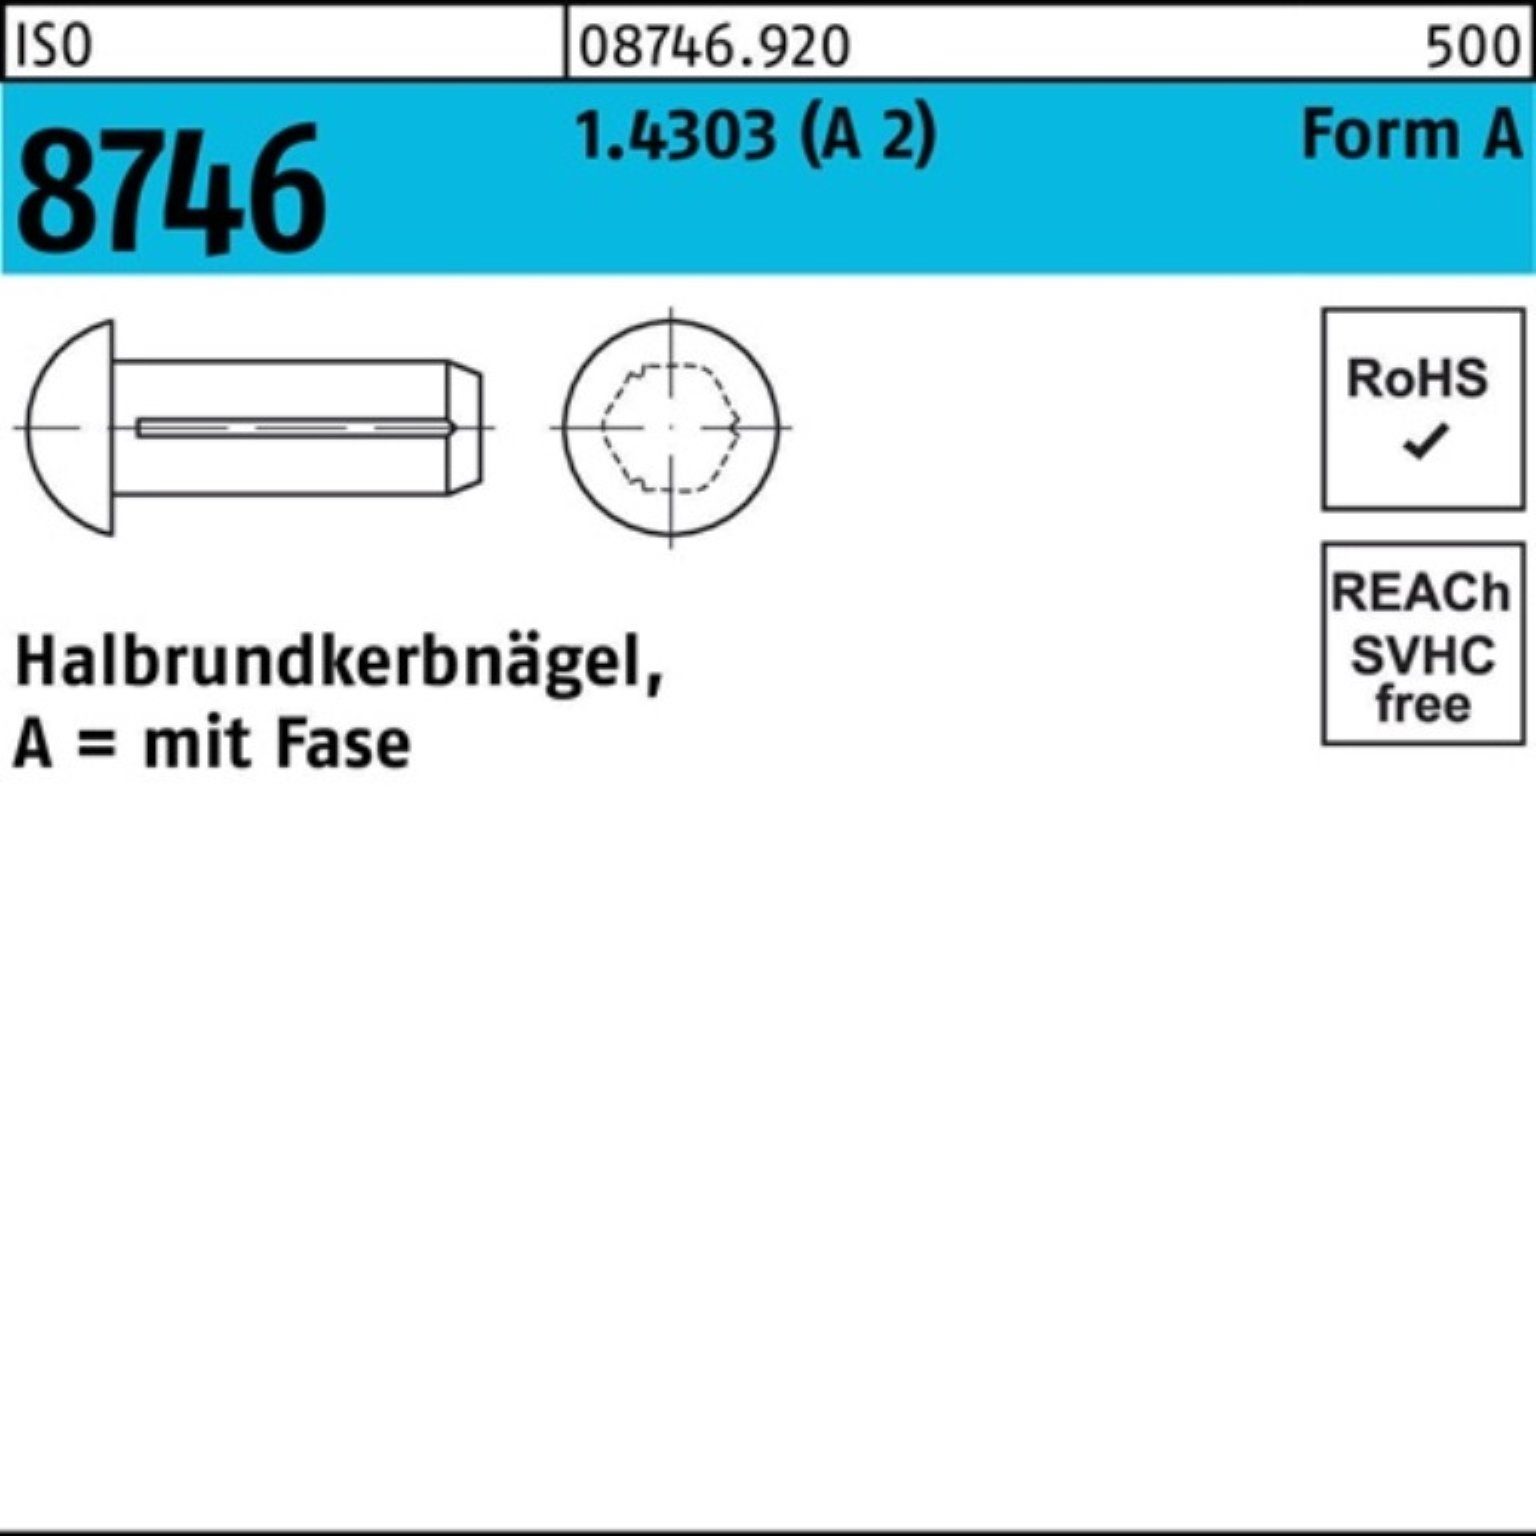 8746 4x 100 100er Nagel Pack 1.4303 ISO Stü 2) Fase Reyher Halbrundkerbnagel 12 (A